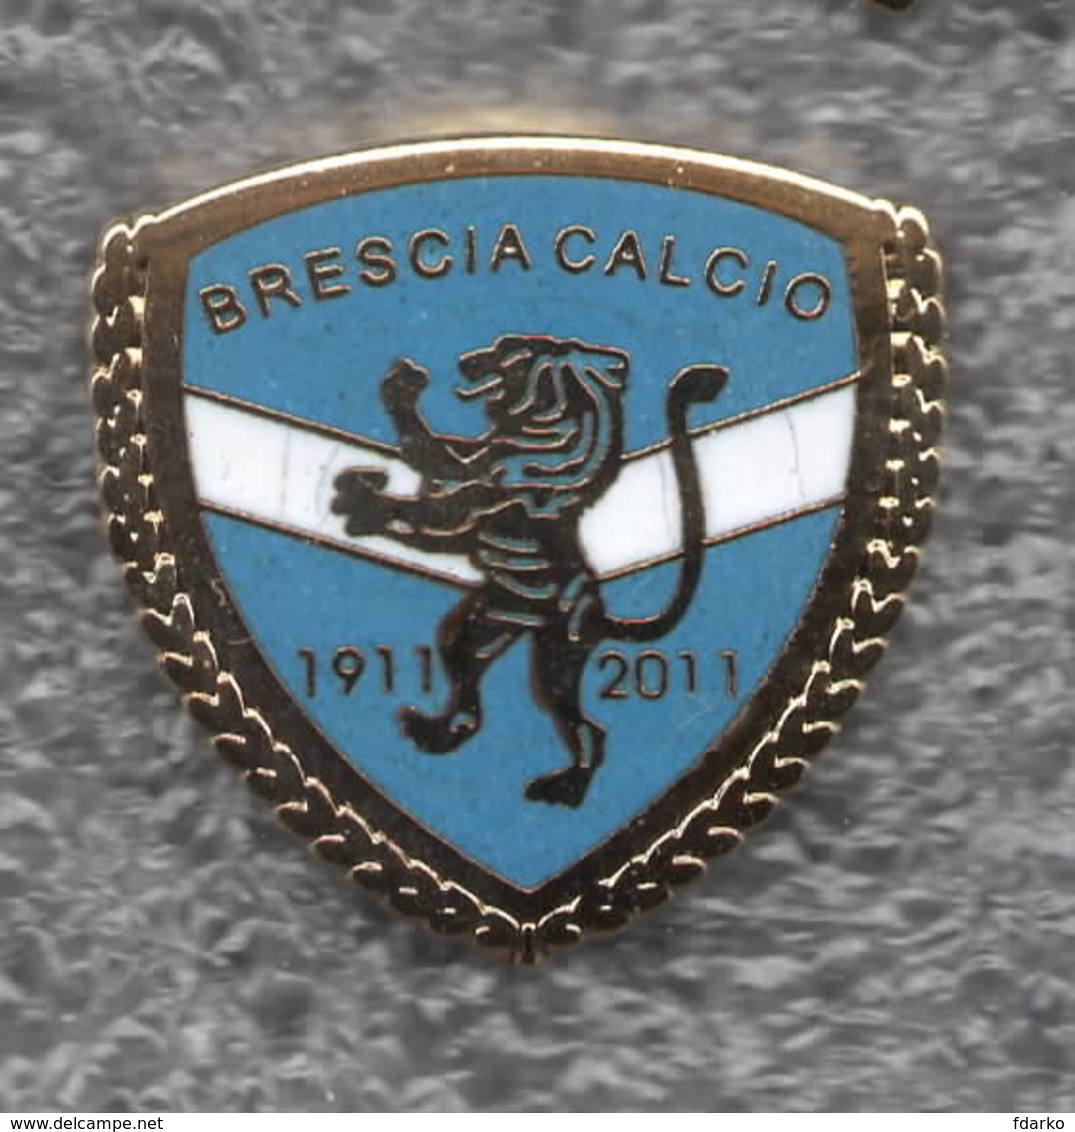 Brescia Calcio Distintivi FootBall Soccer Pins Spilla Italy Iper Zola - Calcio